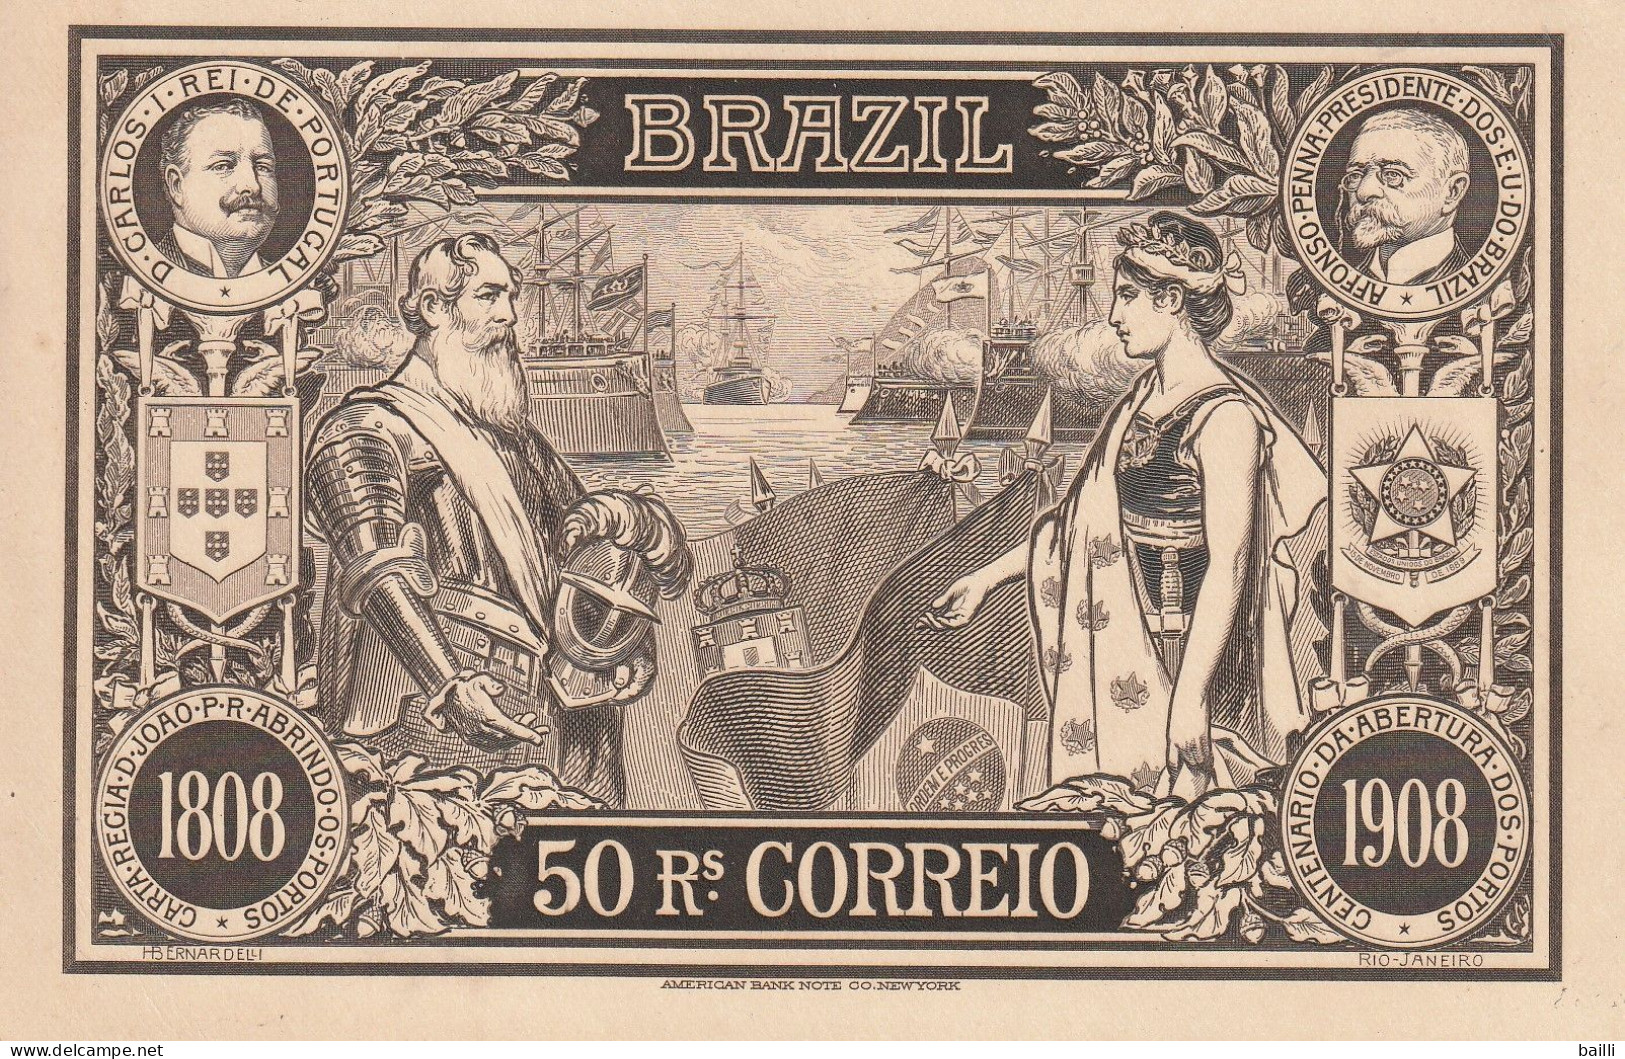 Brésil Entier Postal Illustré 1908 - Entiers Postaux